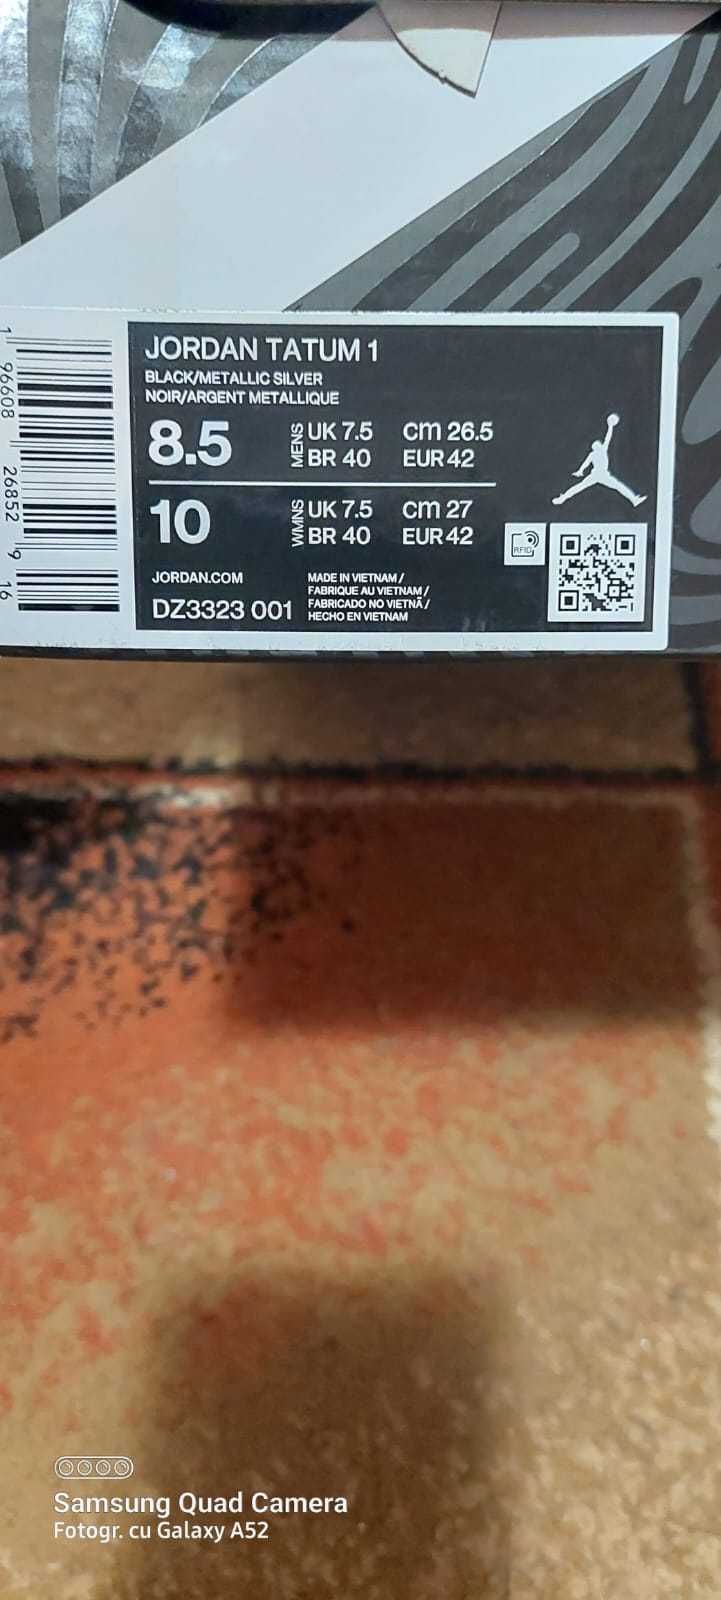 Adidasi Nike Jordan Tatum 1 Barbatesti